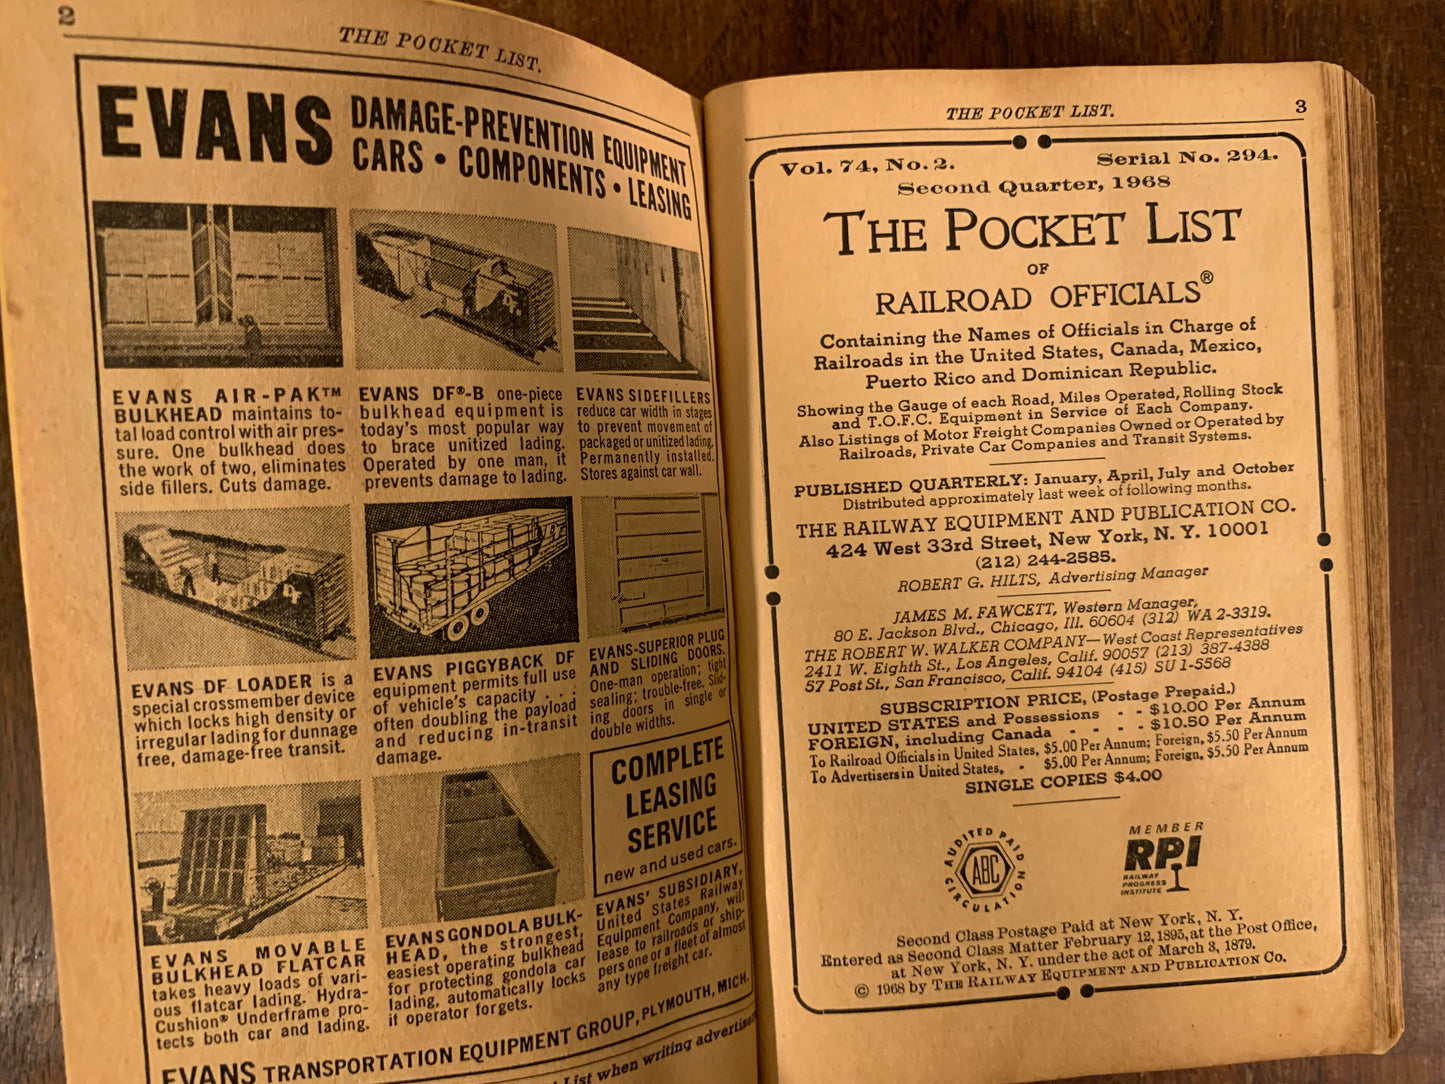 The Pocketlist of Railroad Officials Second Quarter 294, 1968